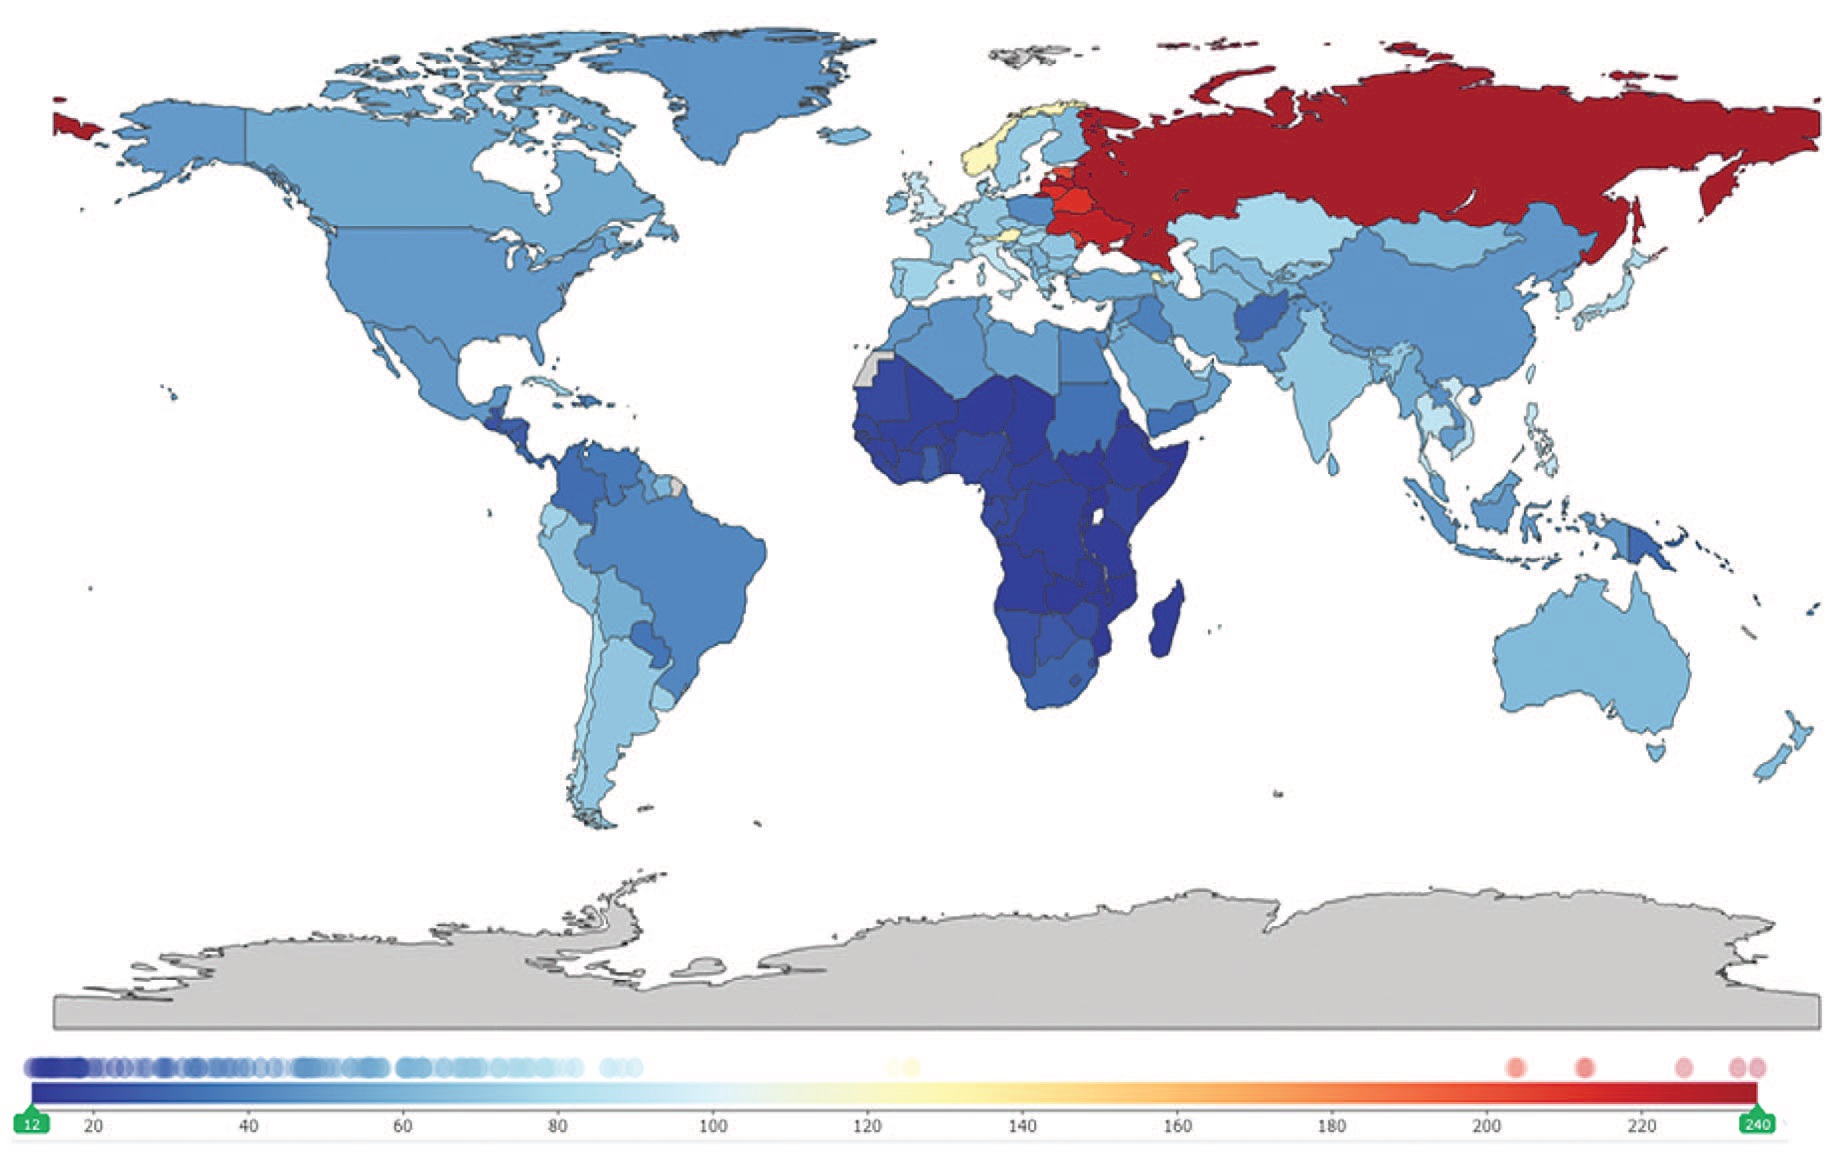 Рис. 1. Распространенность МКБ в мире на 100 000 населения по данным GBD в 2019 г